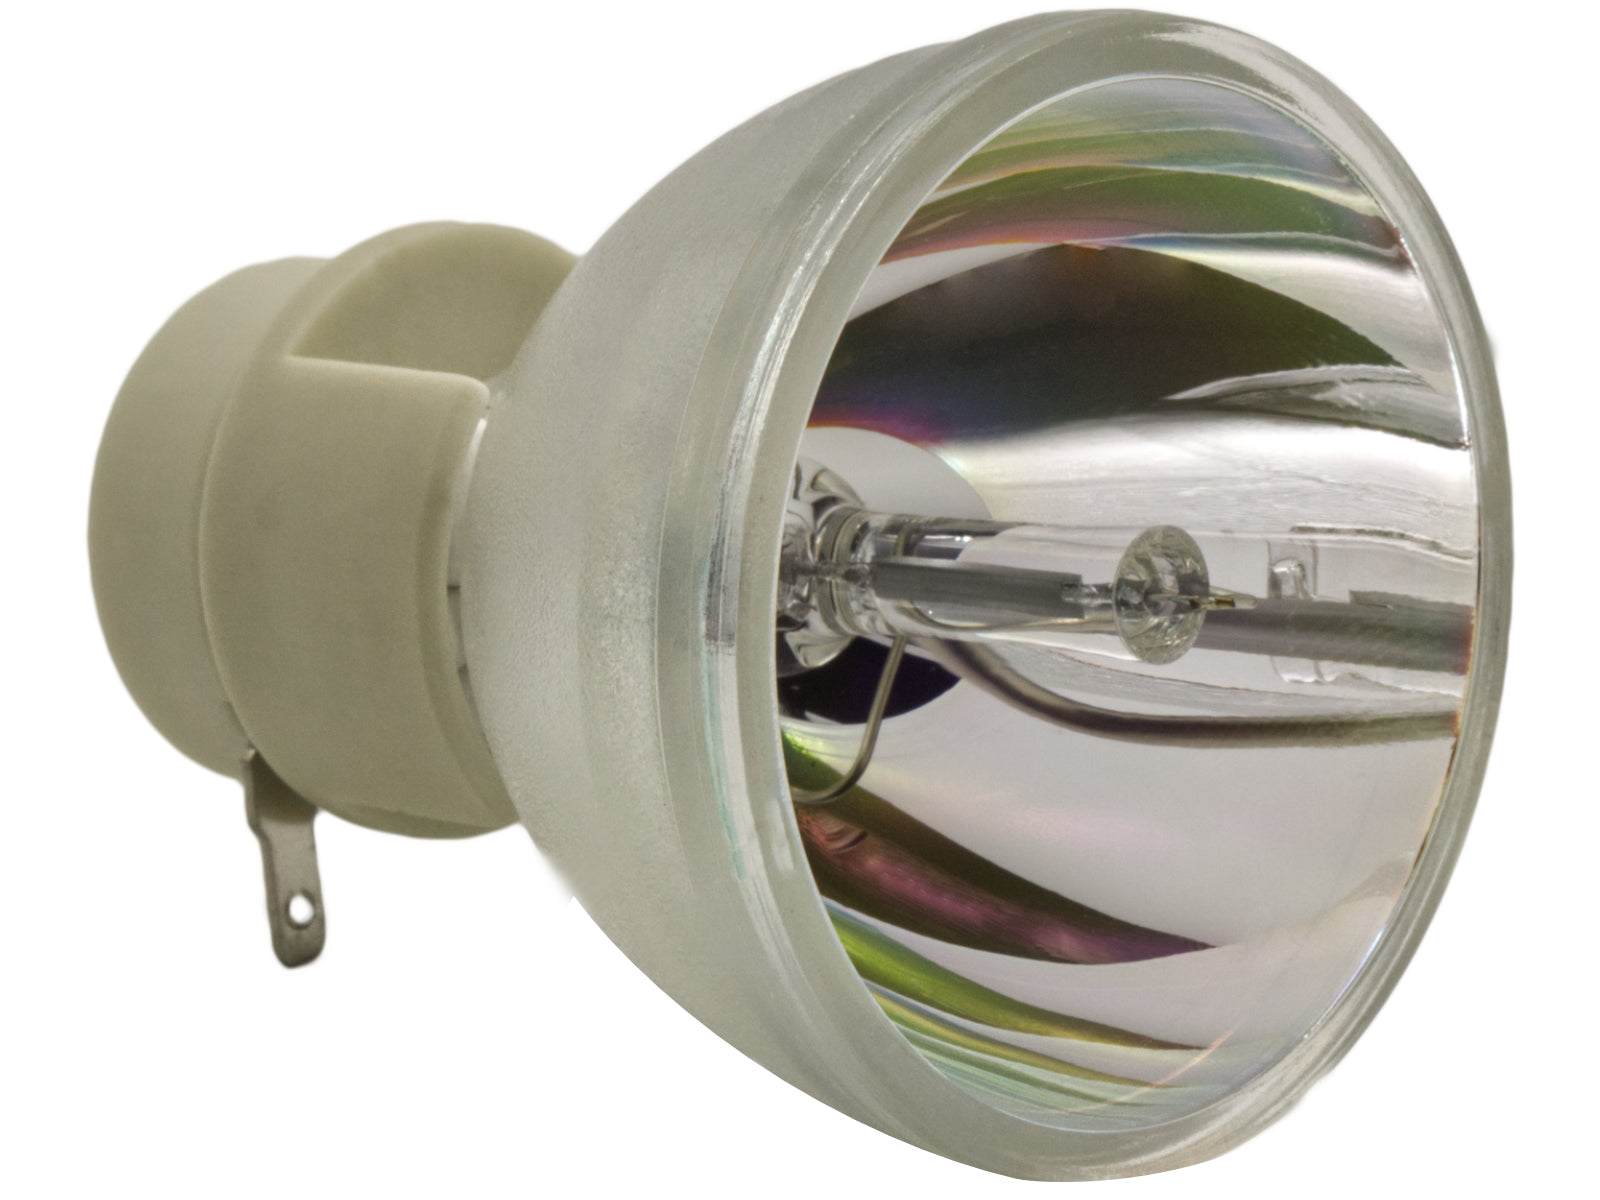 azurano BLB1 lampe de vidéoprojecteur pour OSRAM PVIP 230/0.8 E20.8 lampe de rechange pour divers projecteurs de ACER, BENQ, MITSUBISHI, NEC, OPTOMA, SMART BOARD, PROMETHEAN, THEMESCENE, 230W - Bild 2